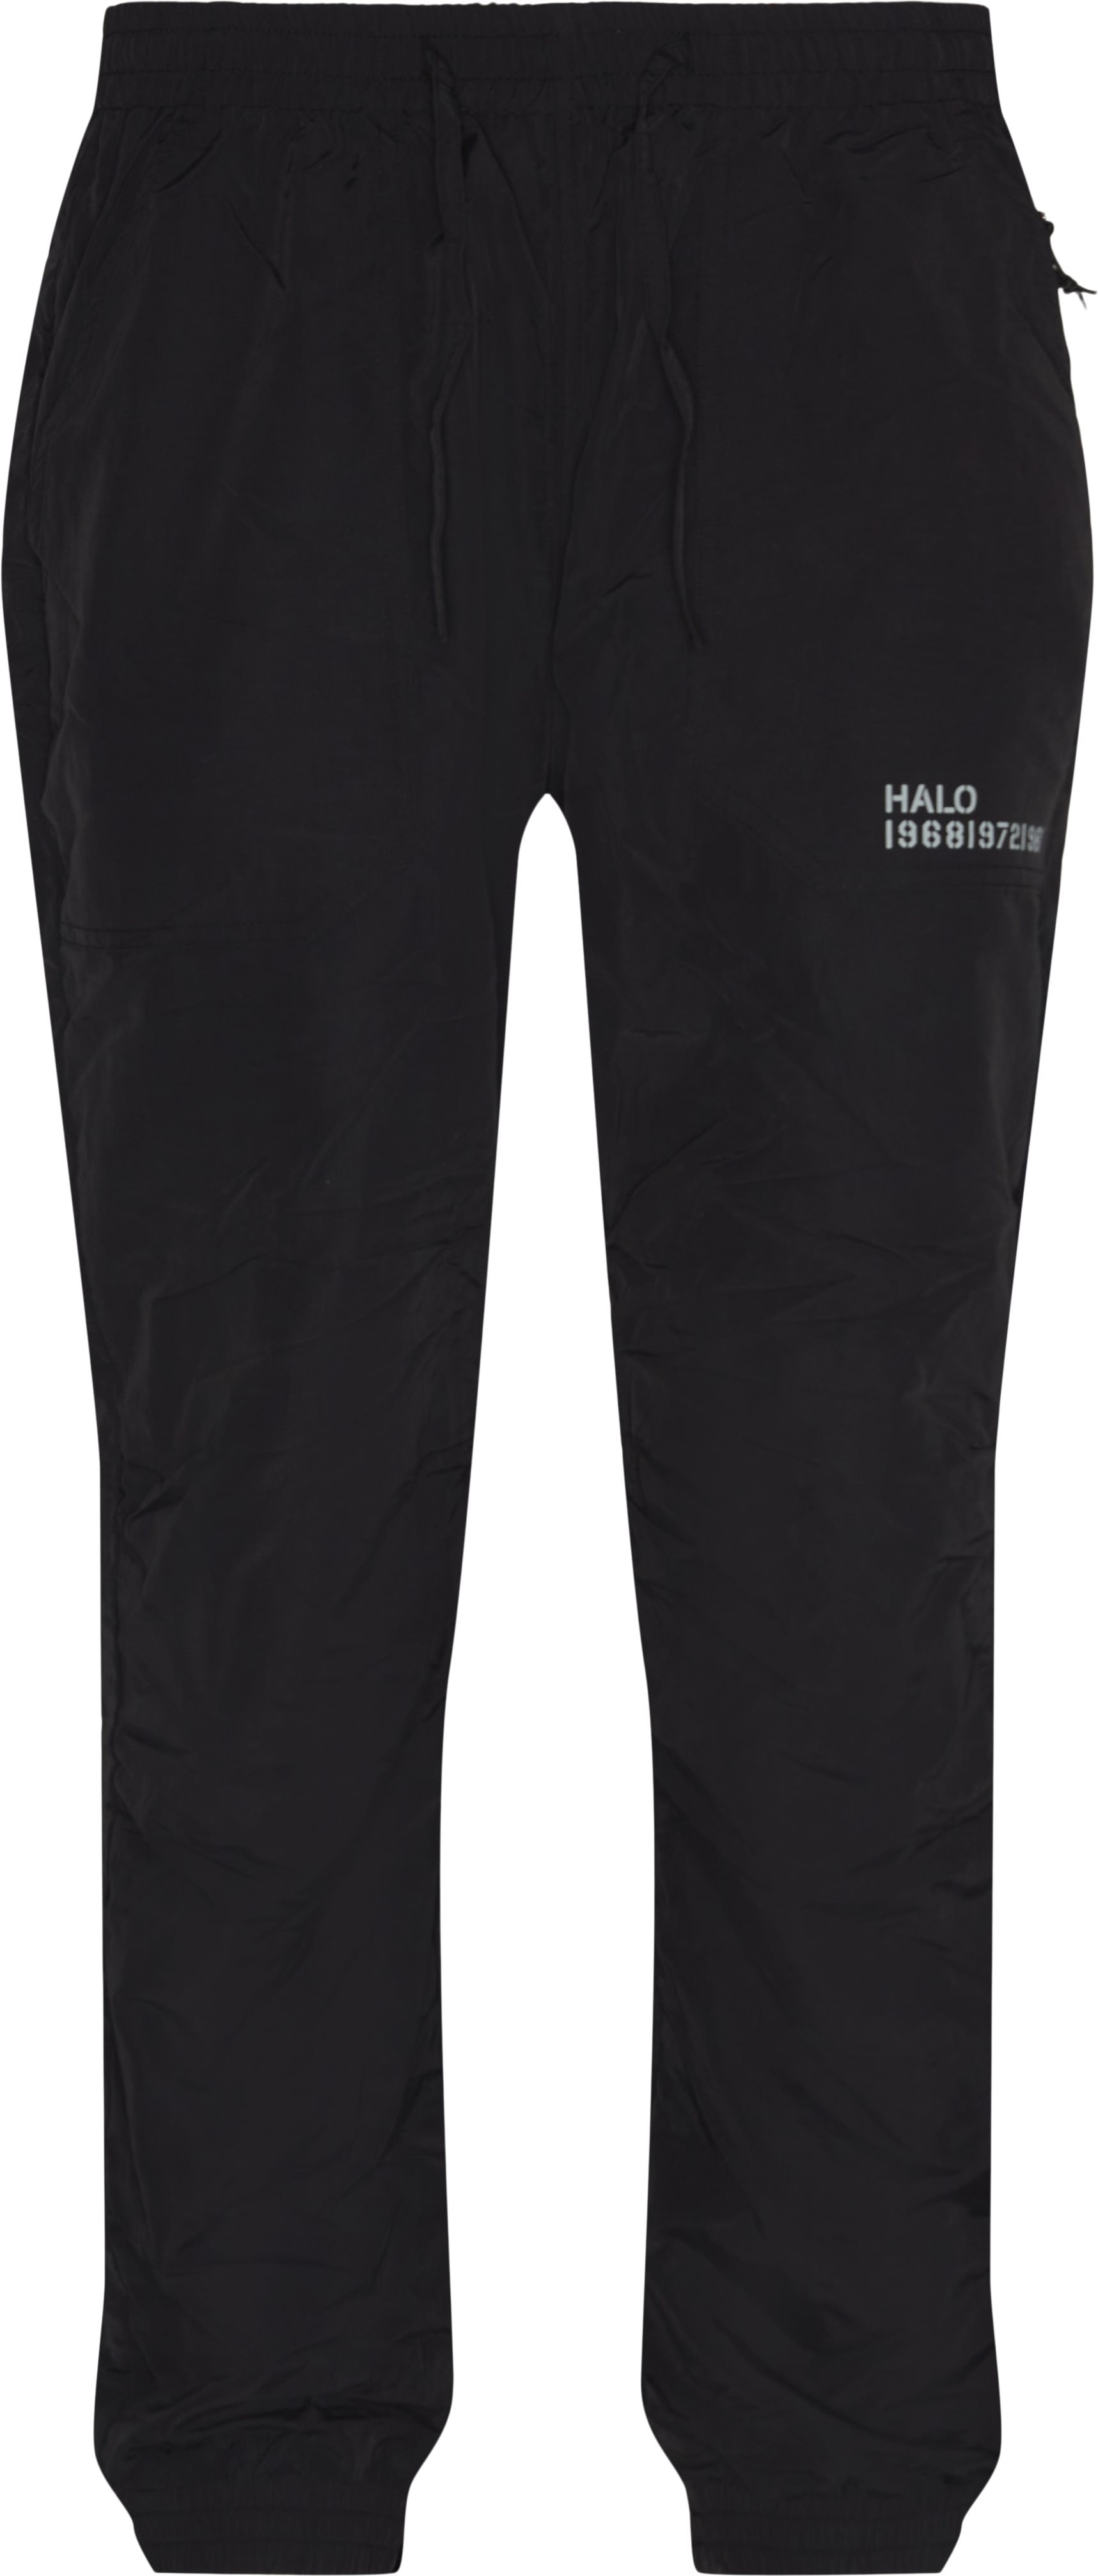 HALO Trousers NYLON PANT 610070 Black